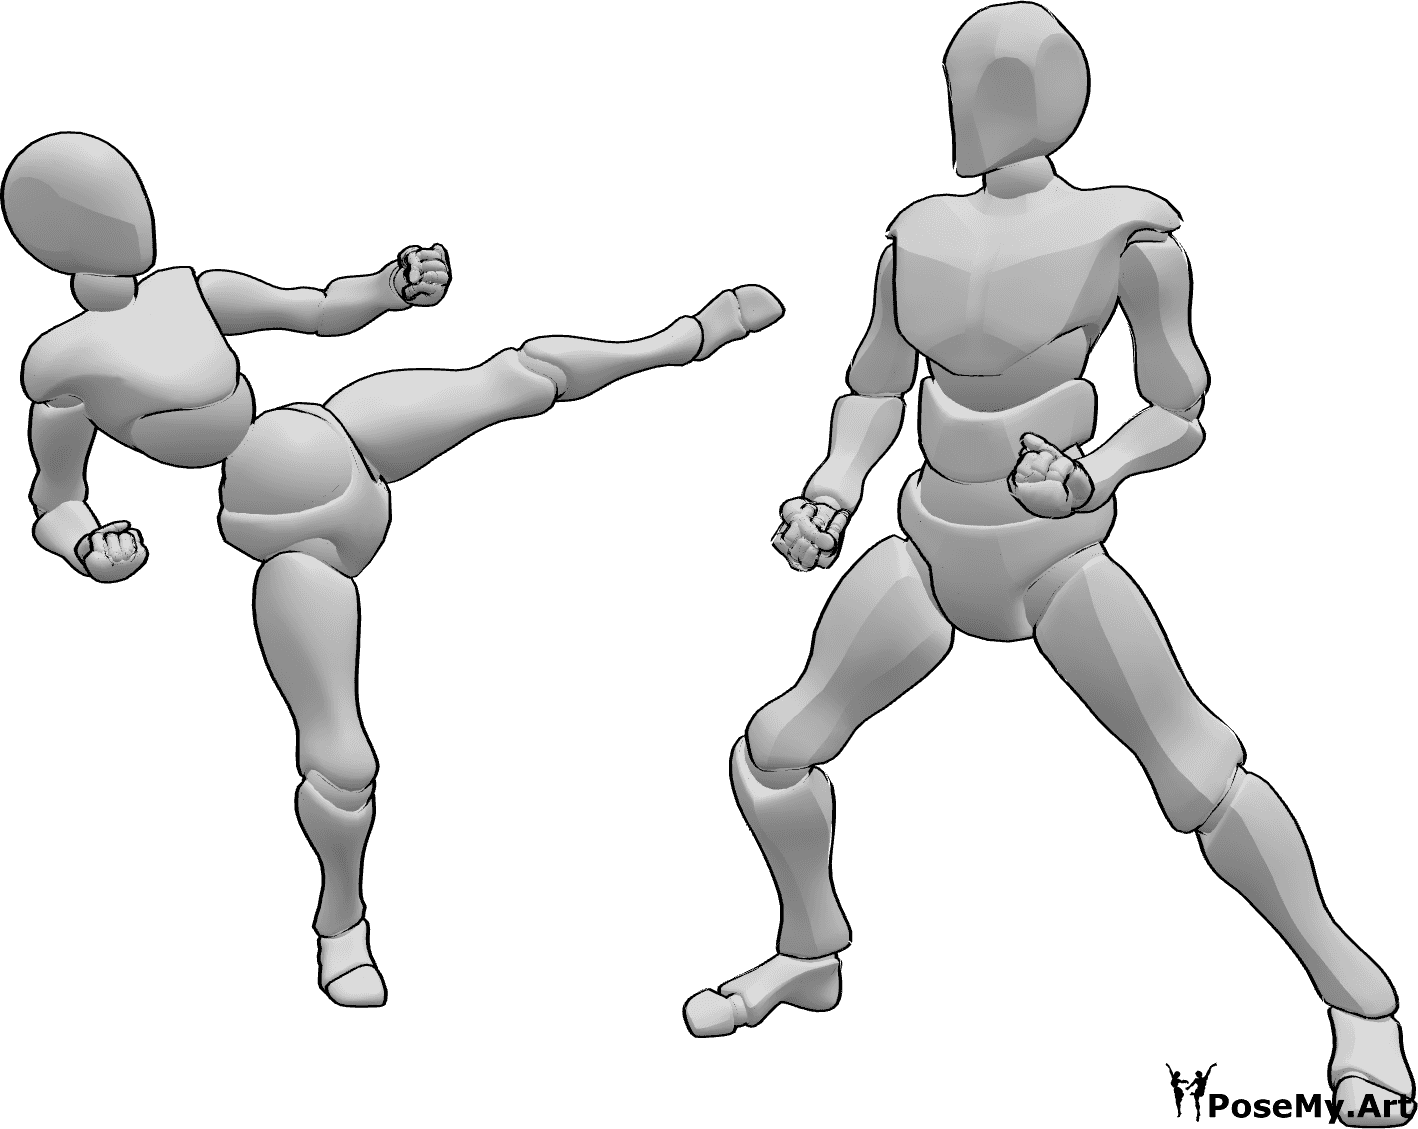 Referência de poses- Pose de karaté de homem e mulher - Mulher e homem lutam, pose de karaté